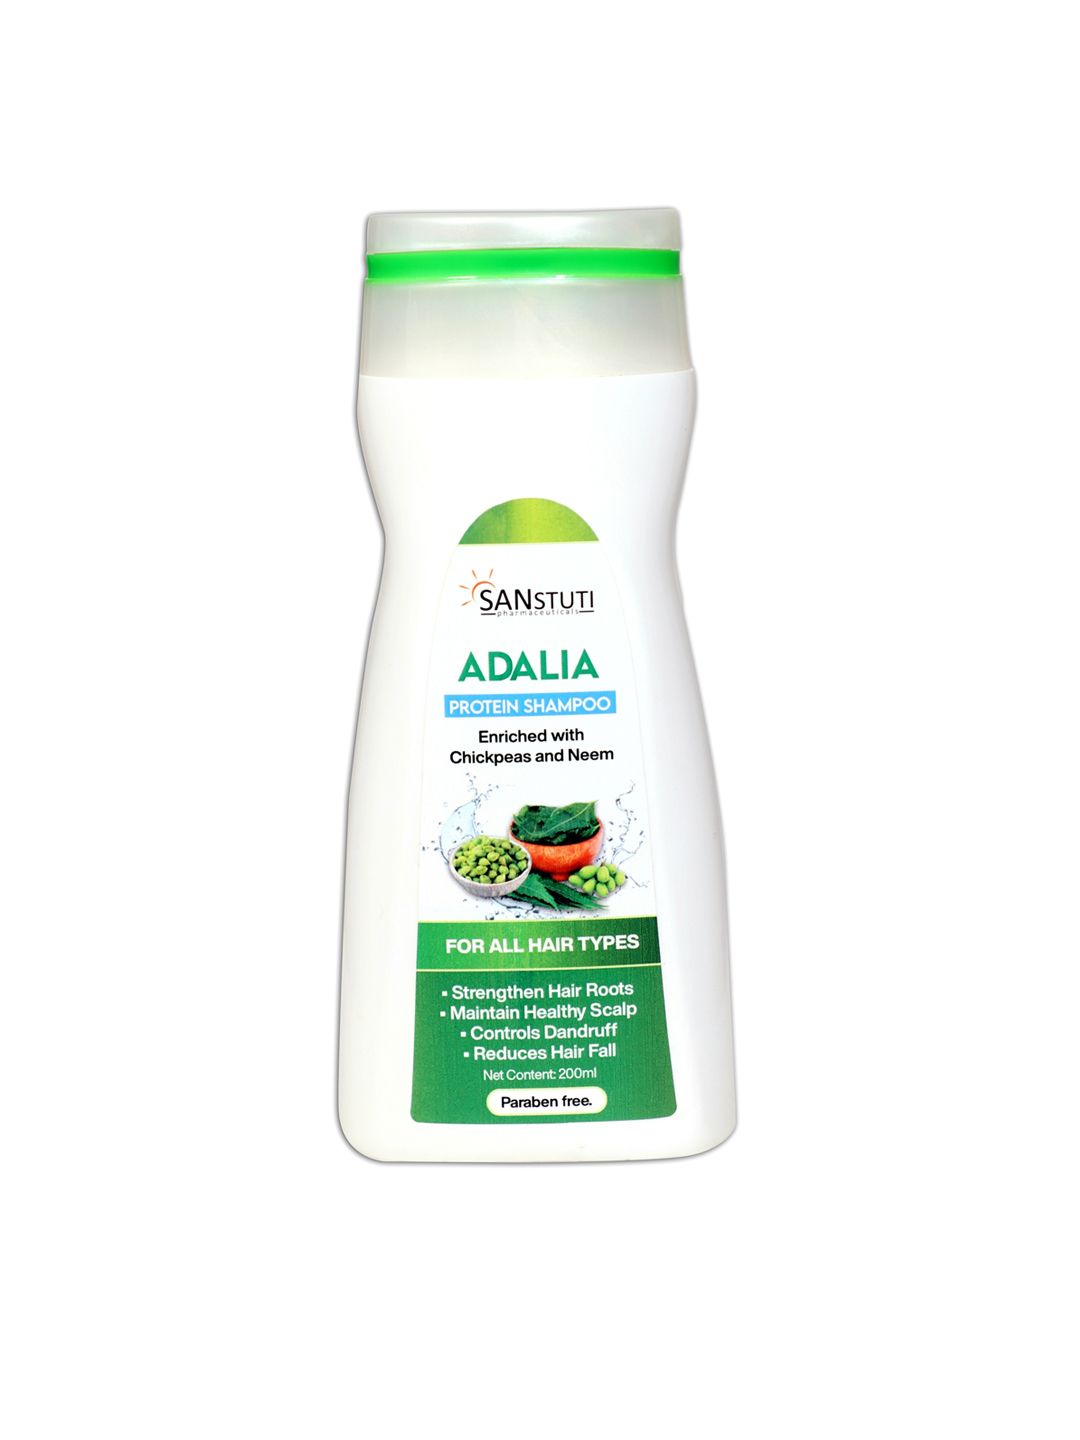 KETOGLARE Adalia Protein Shampoo Price in India